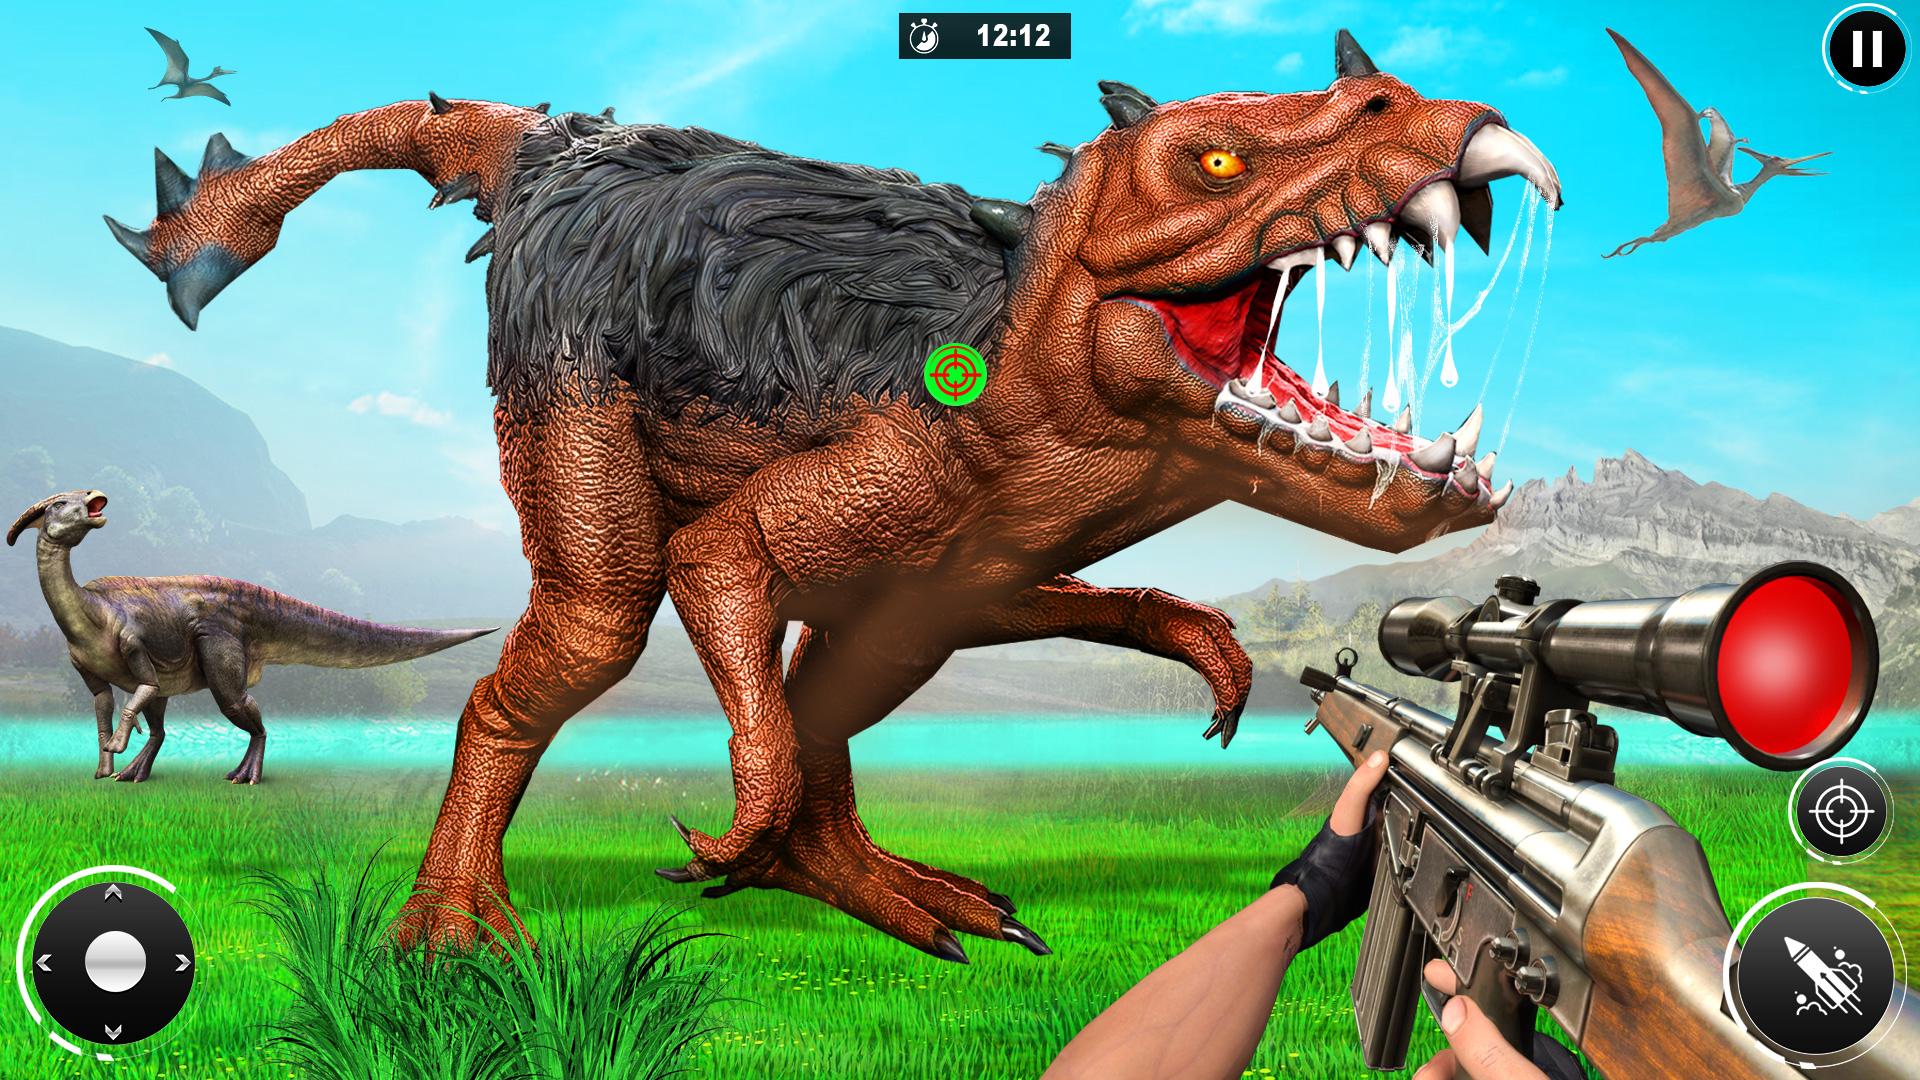 Игры динозавров 5. Охота на динозавров. Dinosaurs Hunting игра. Dinosaur охота. Игра про охоту на динозавров 2007.